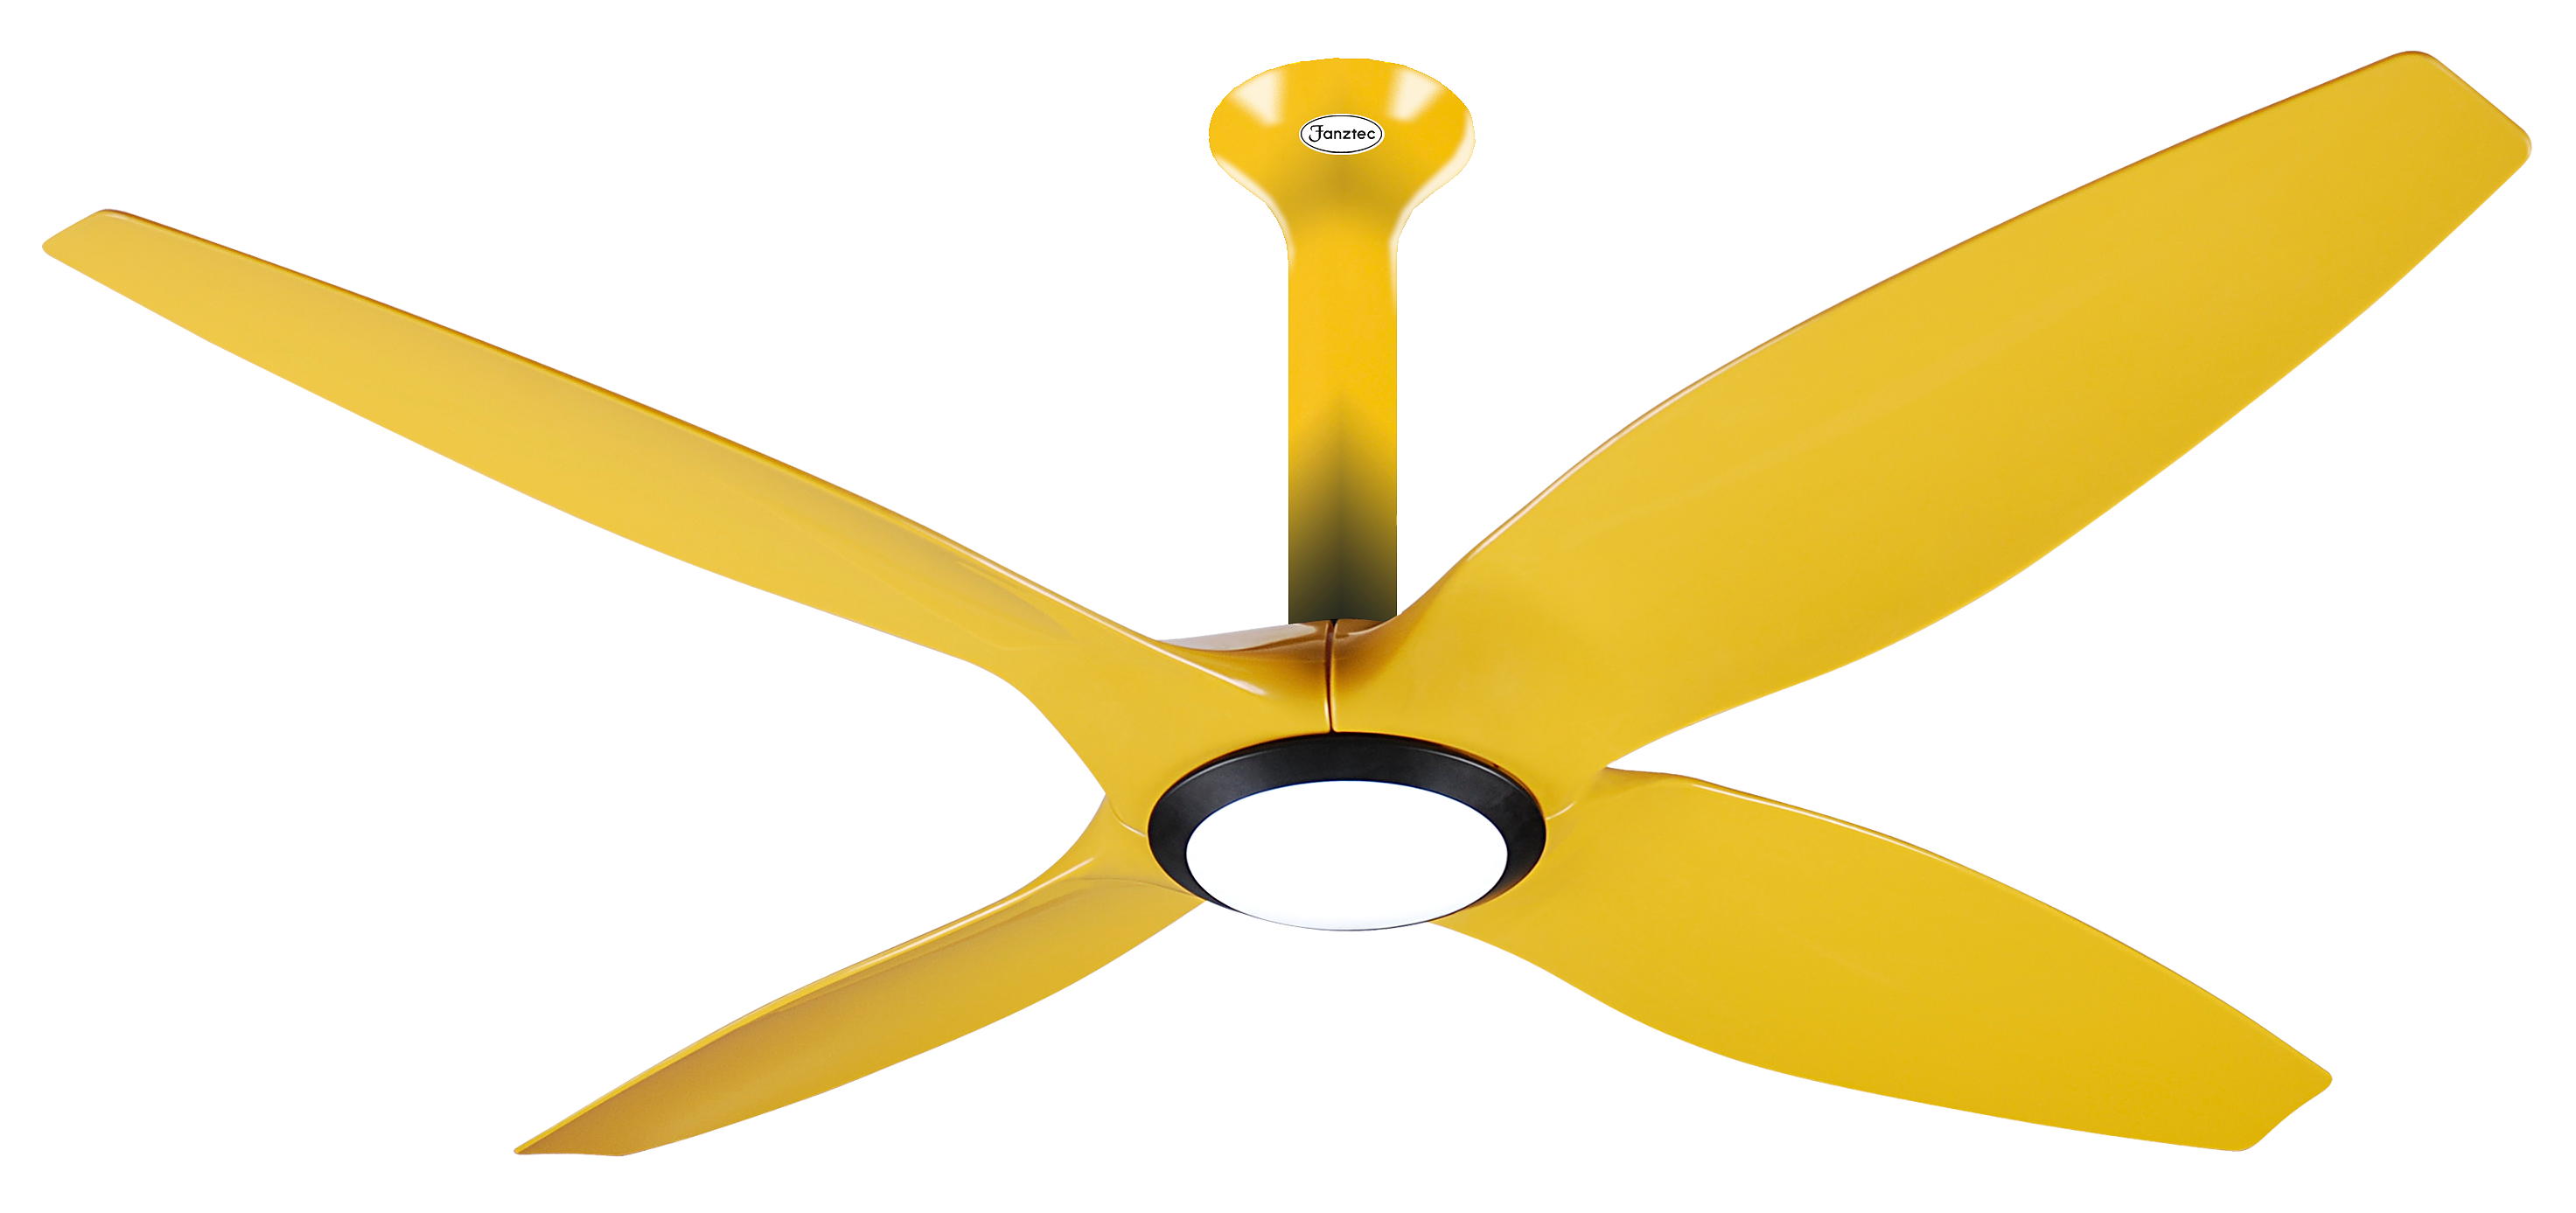 fan clipart ceiling lamp